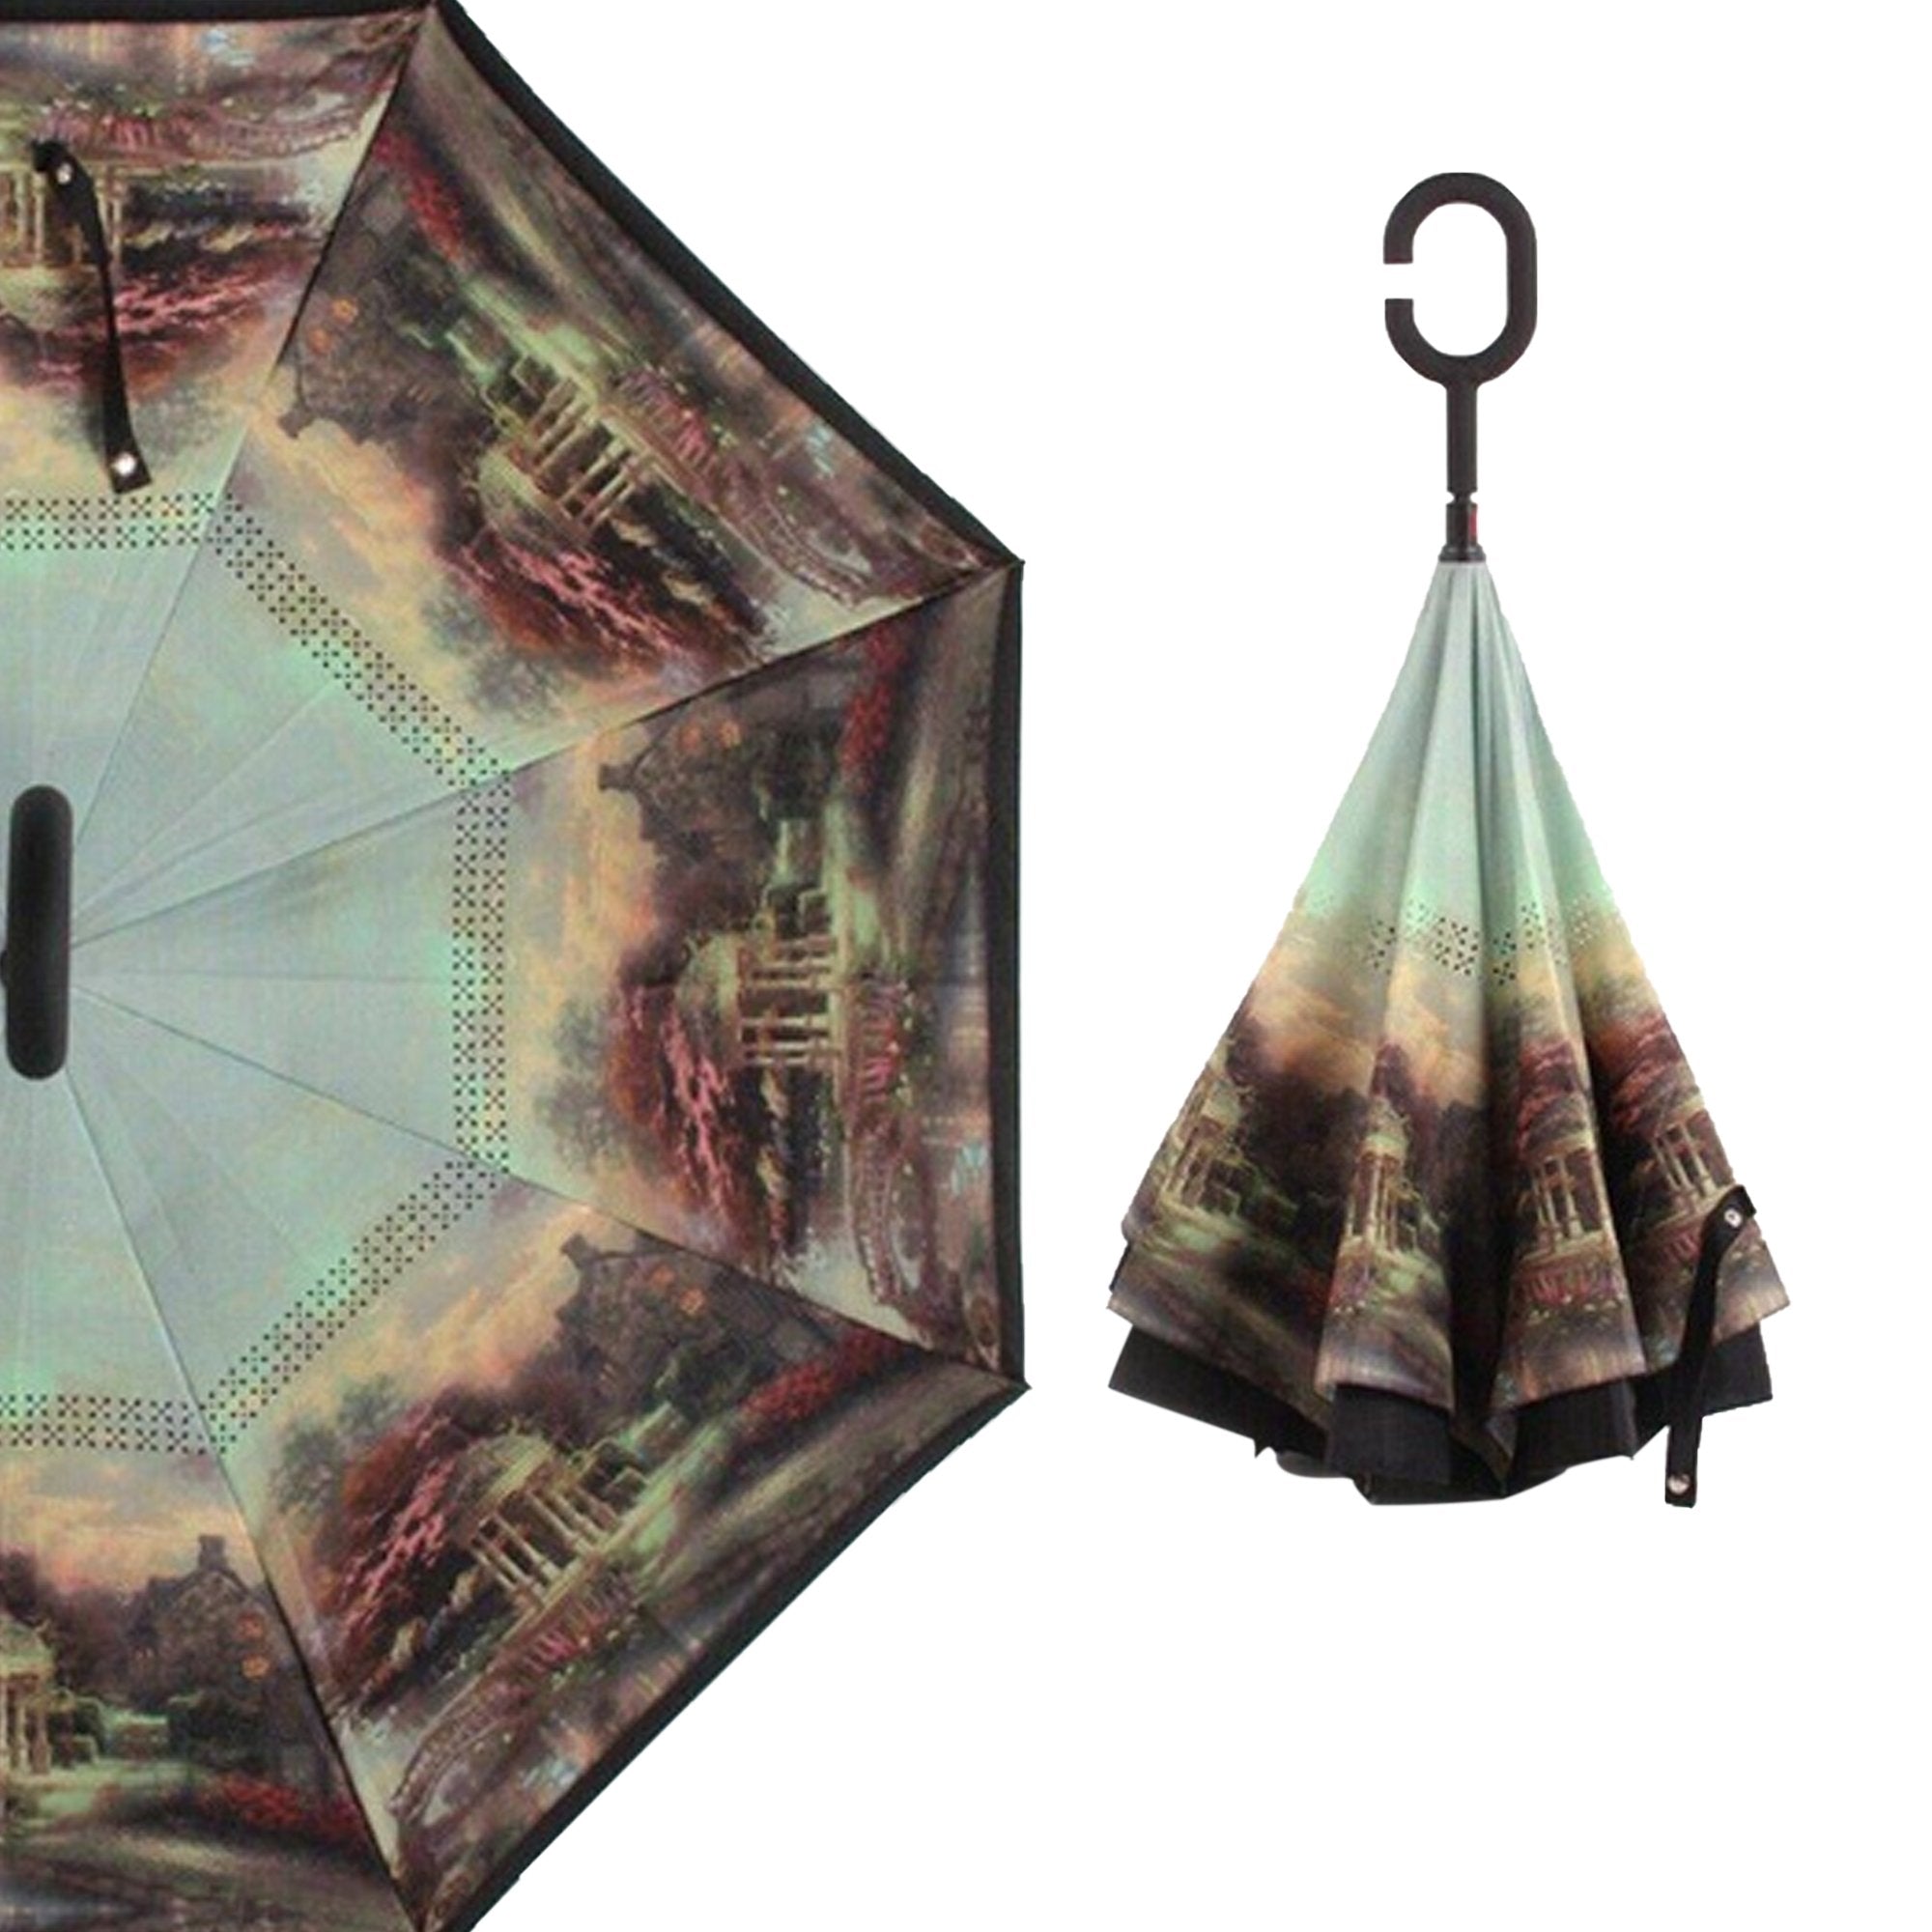 0233 travel windproof umbrella reverse umbrella